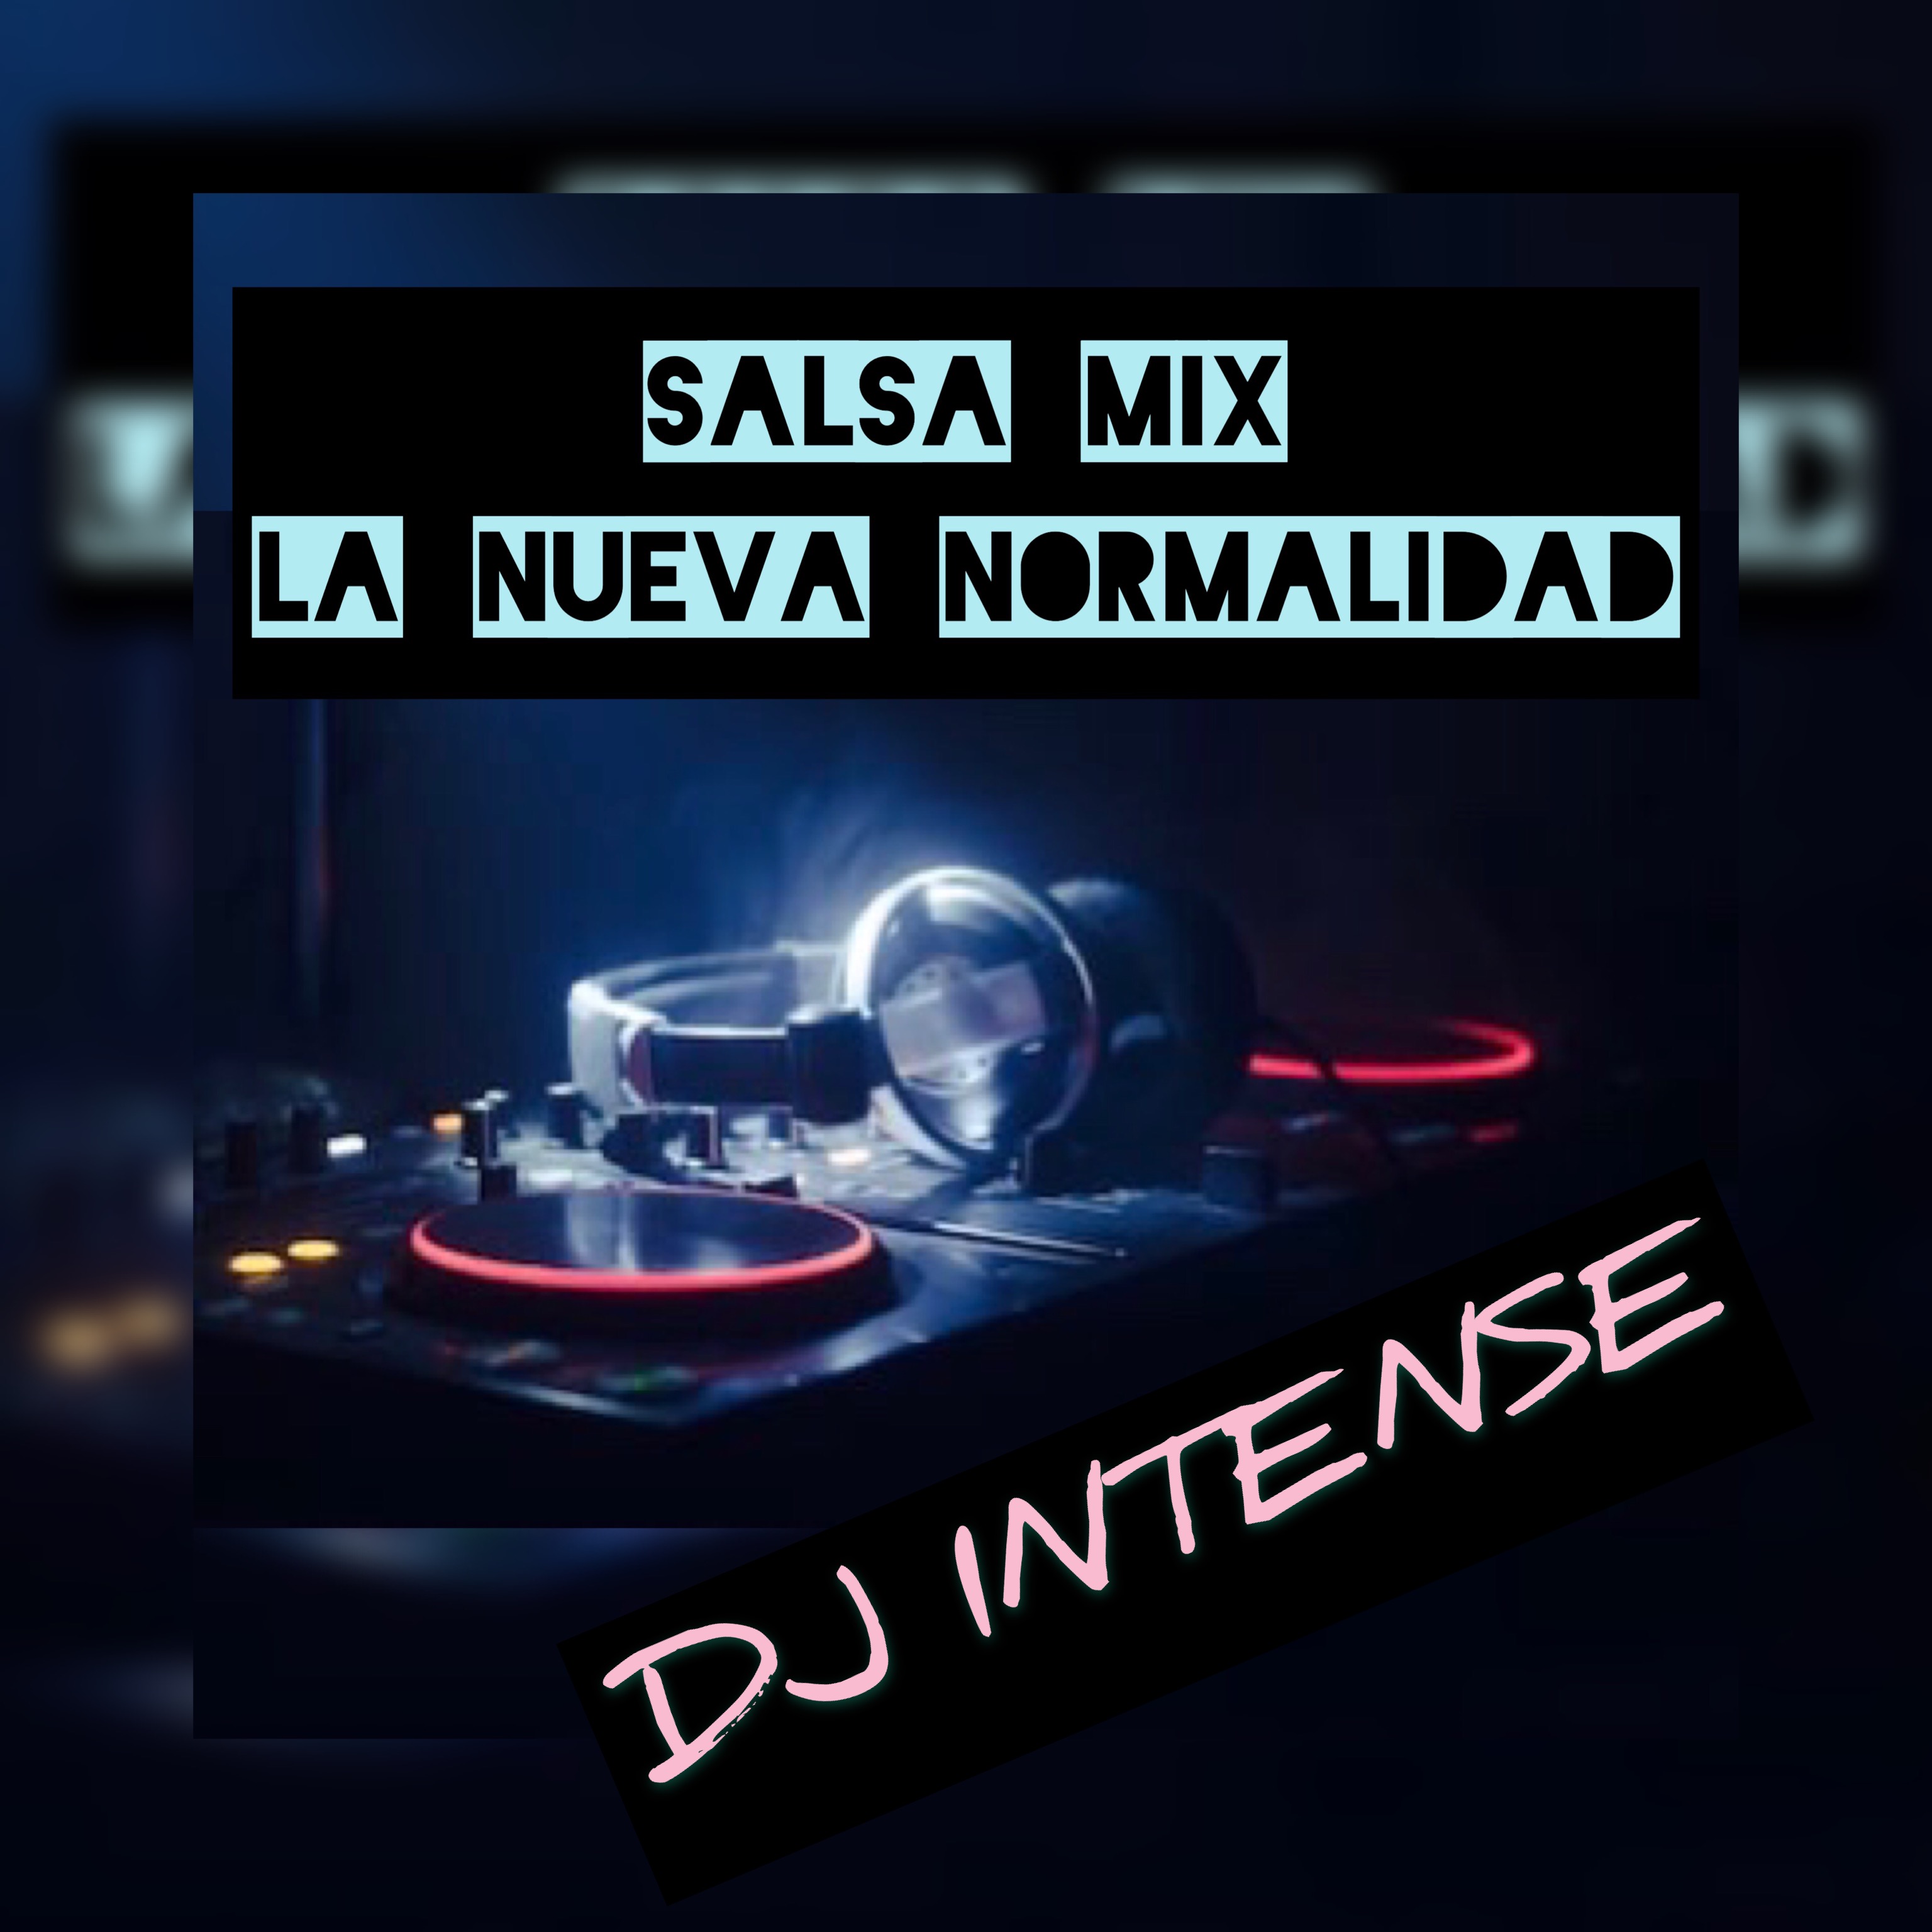 SALSA MIX LA NUEVA NORMALIDAD -DJ INTENSE 1